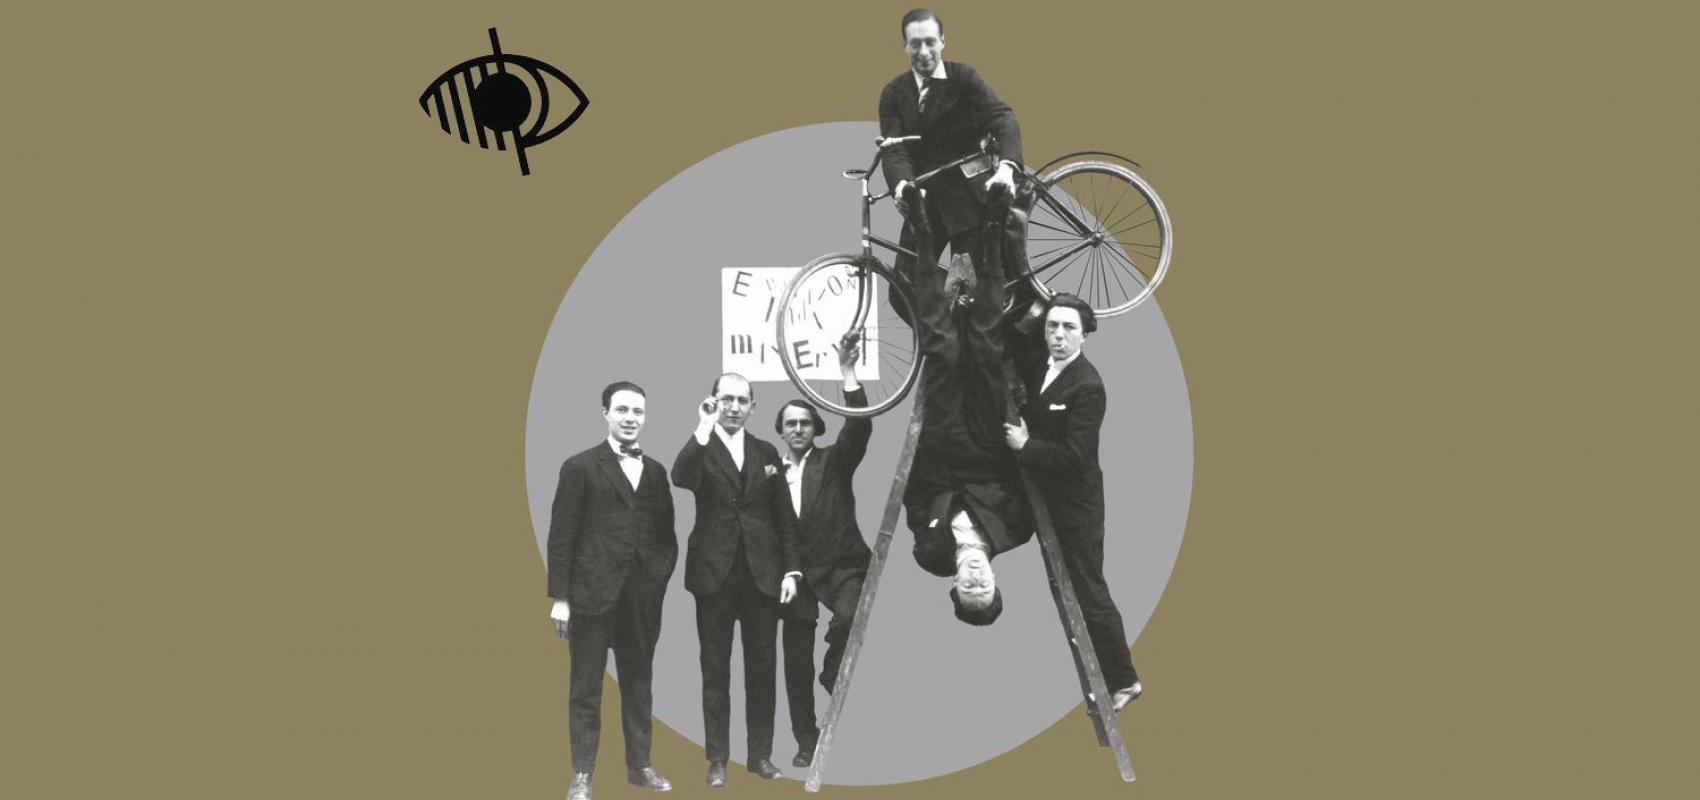 Photographie du groupe surréaliste lors du vernissage de l'exposition « Dada Max Ernst », le 2 mai 1921 -  - Auteur inconnu © Chancellerie des Universités de Paris - BLJD, Paris / cliché © BnF / Suzanne Nagy